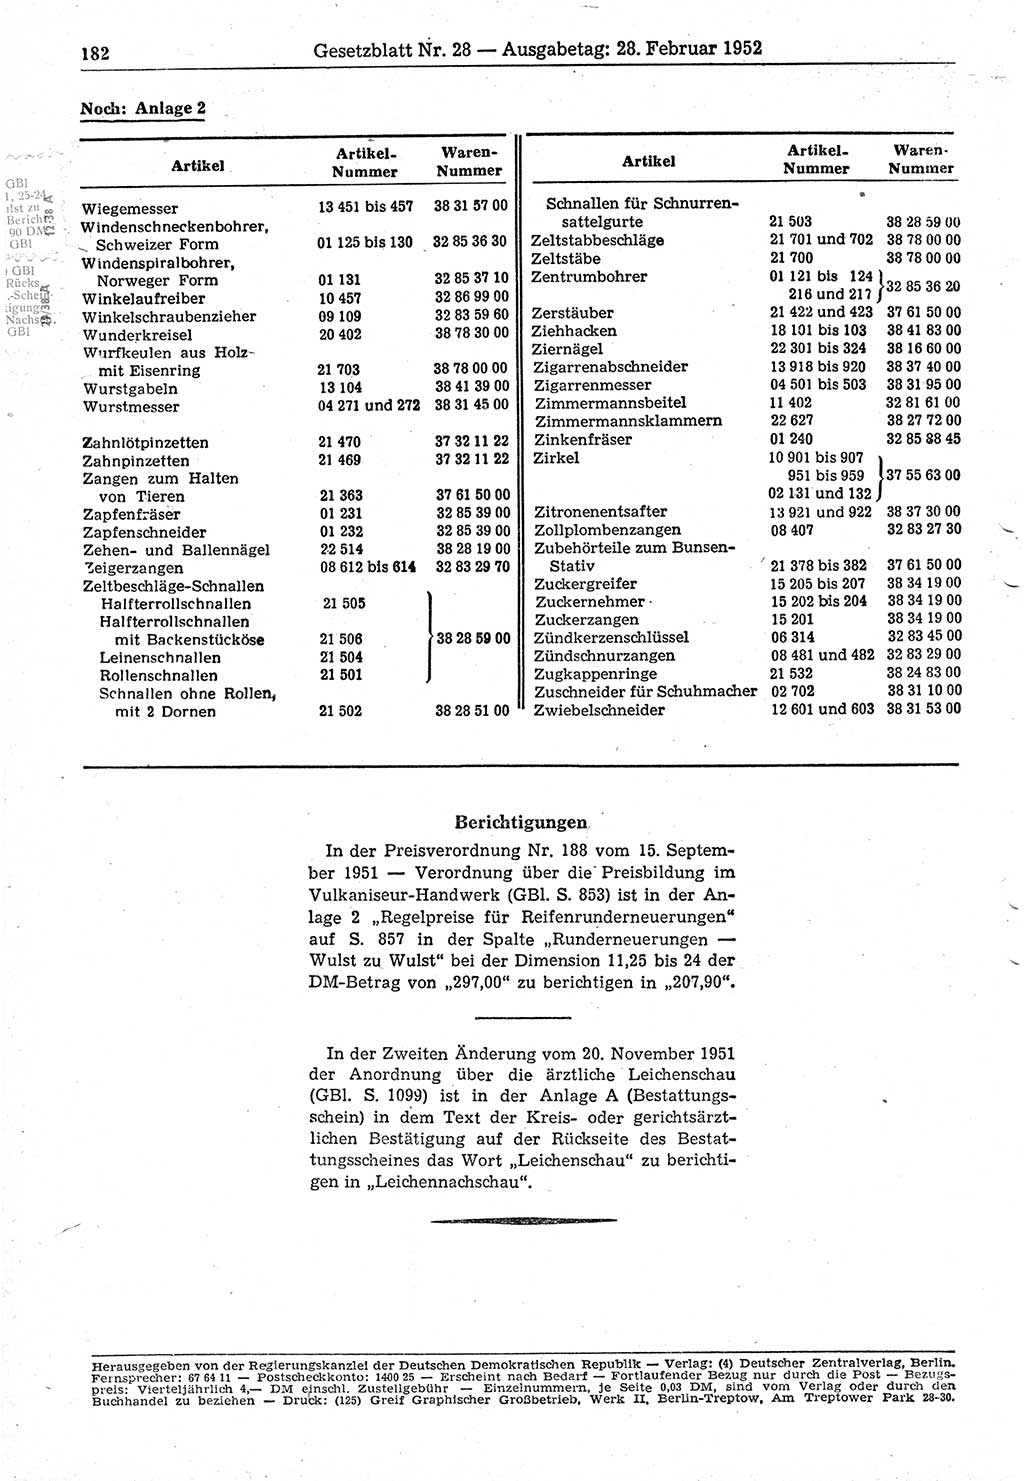 Gesetzblatt (GBl.) der Deutschen Demokratischen Republik (DDR) 1952, Seite 182 (GBl. DDR 1952, S. 182)